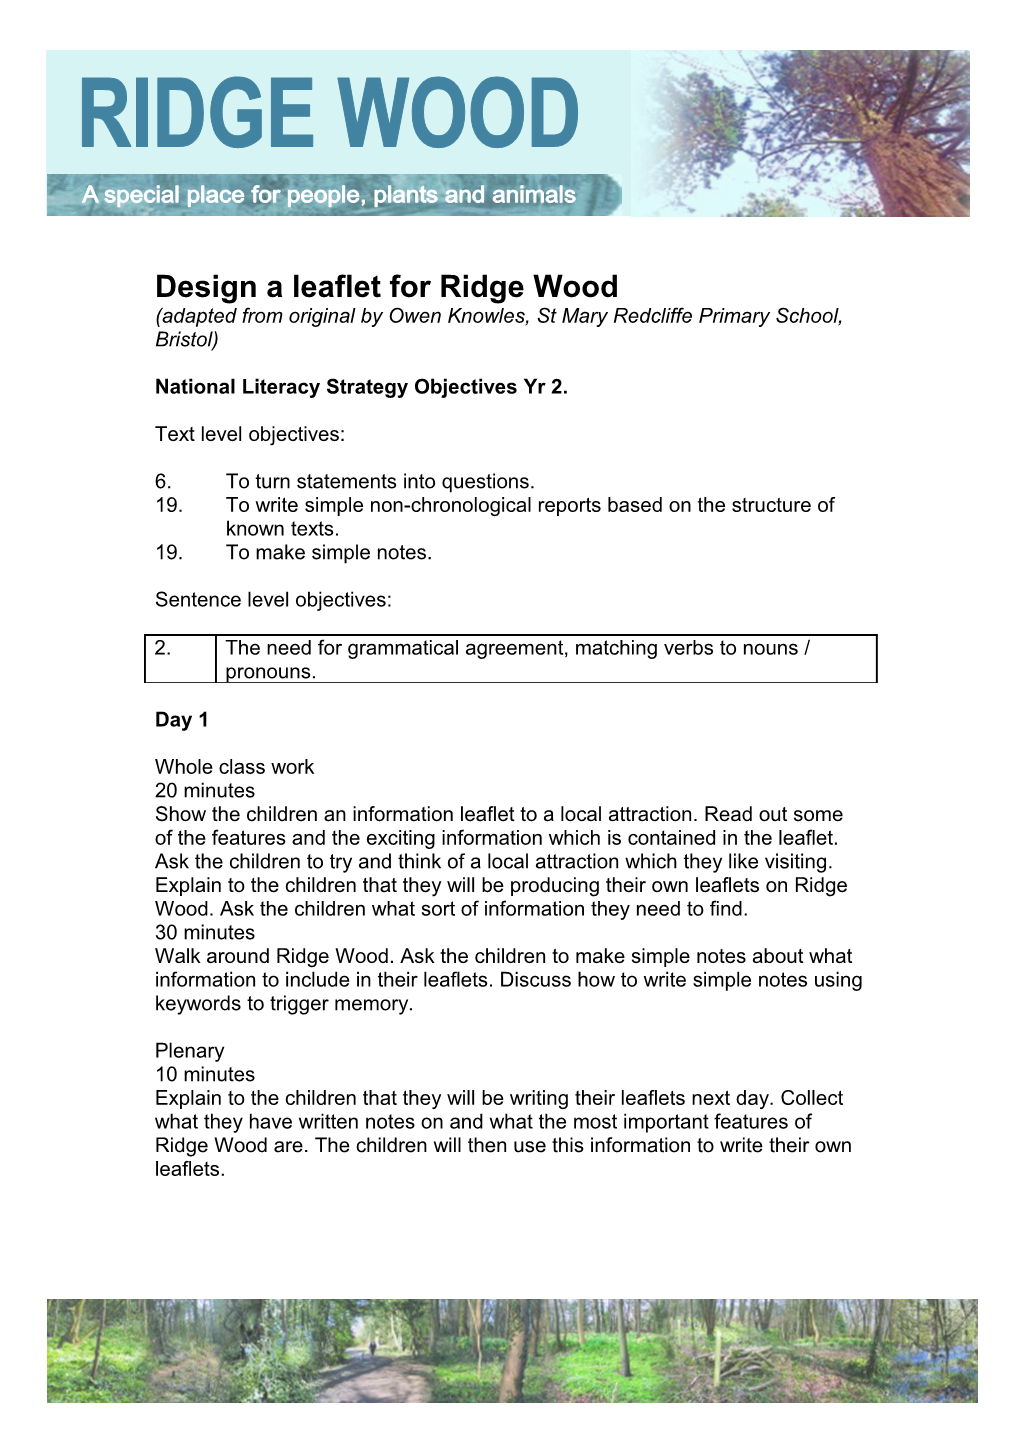 Design a Leaflet for Ridge Wood